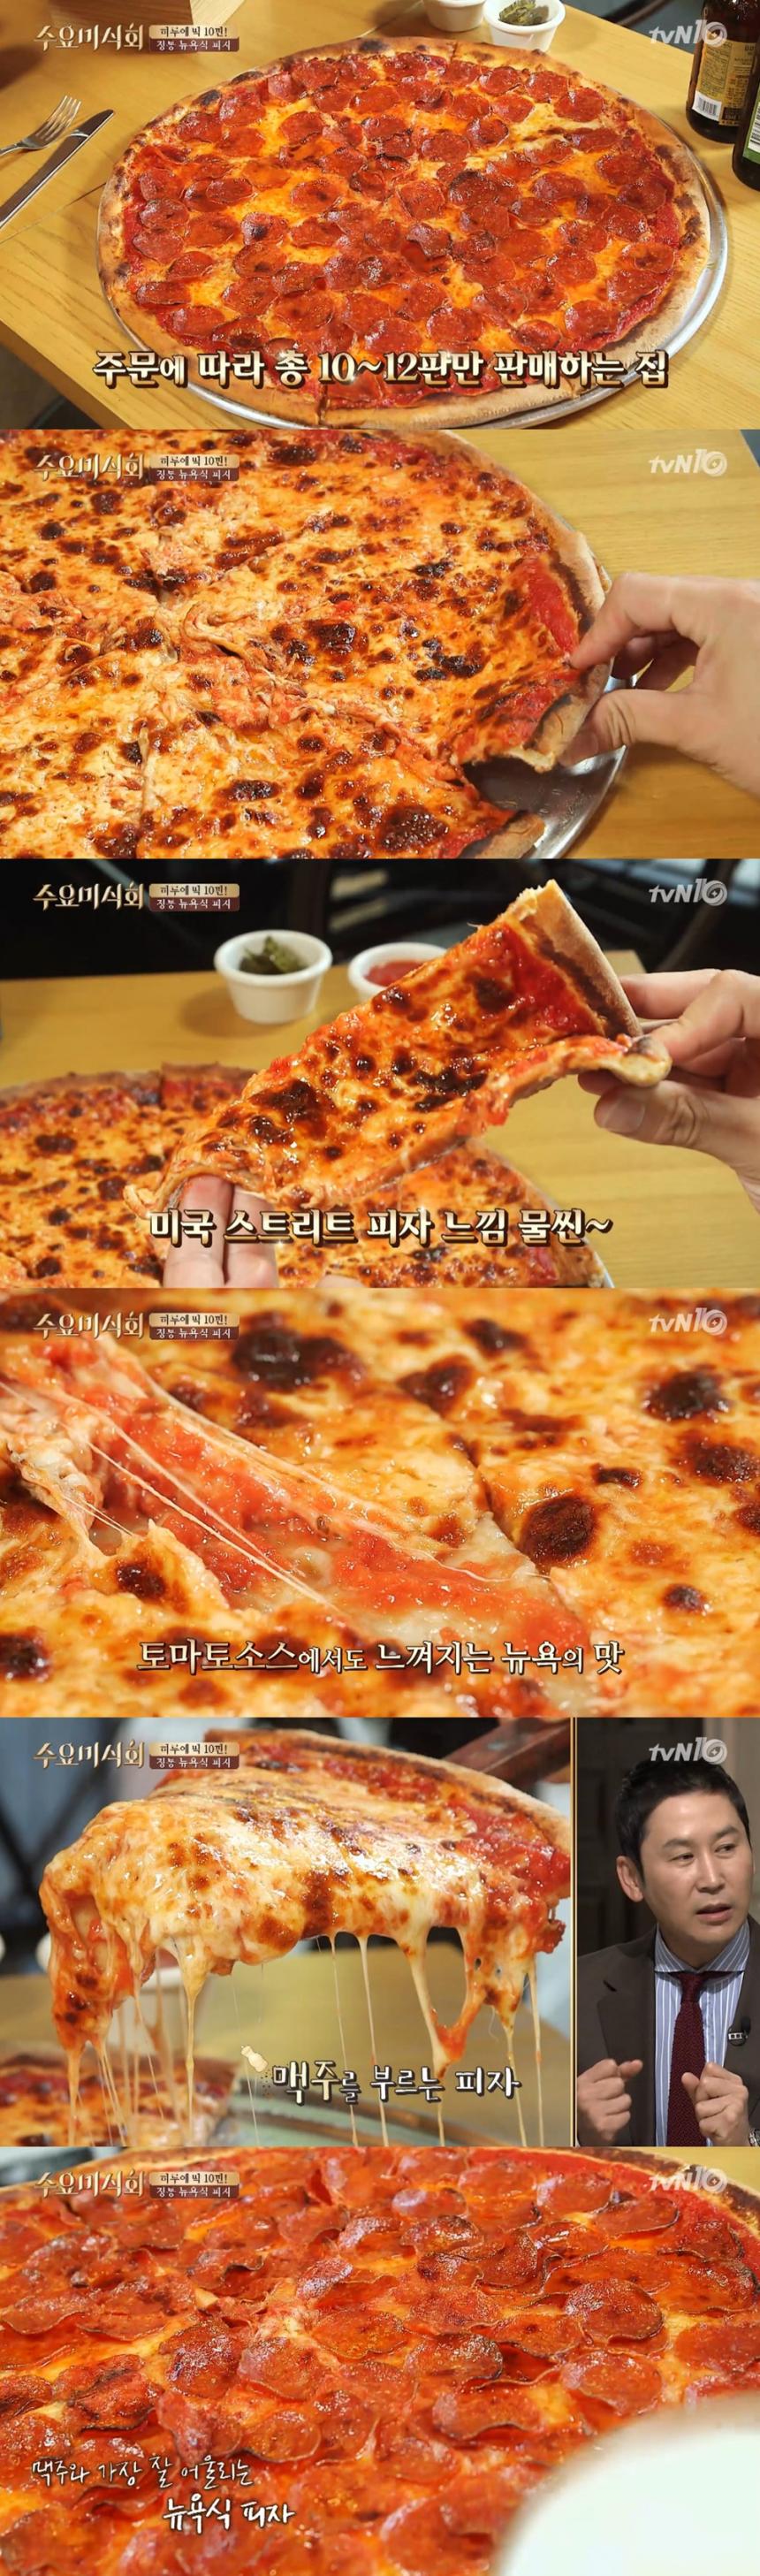 피자 / tvN ‘수요미식회’ 방송 캡처